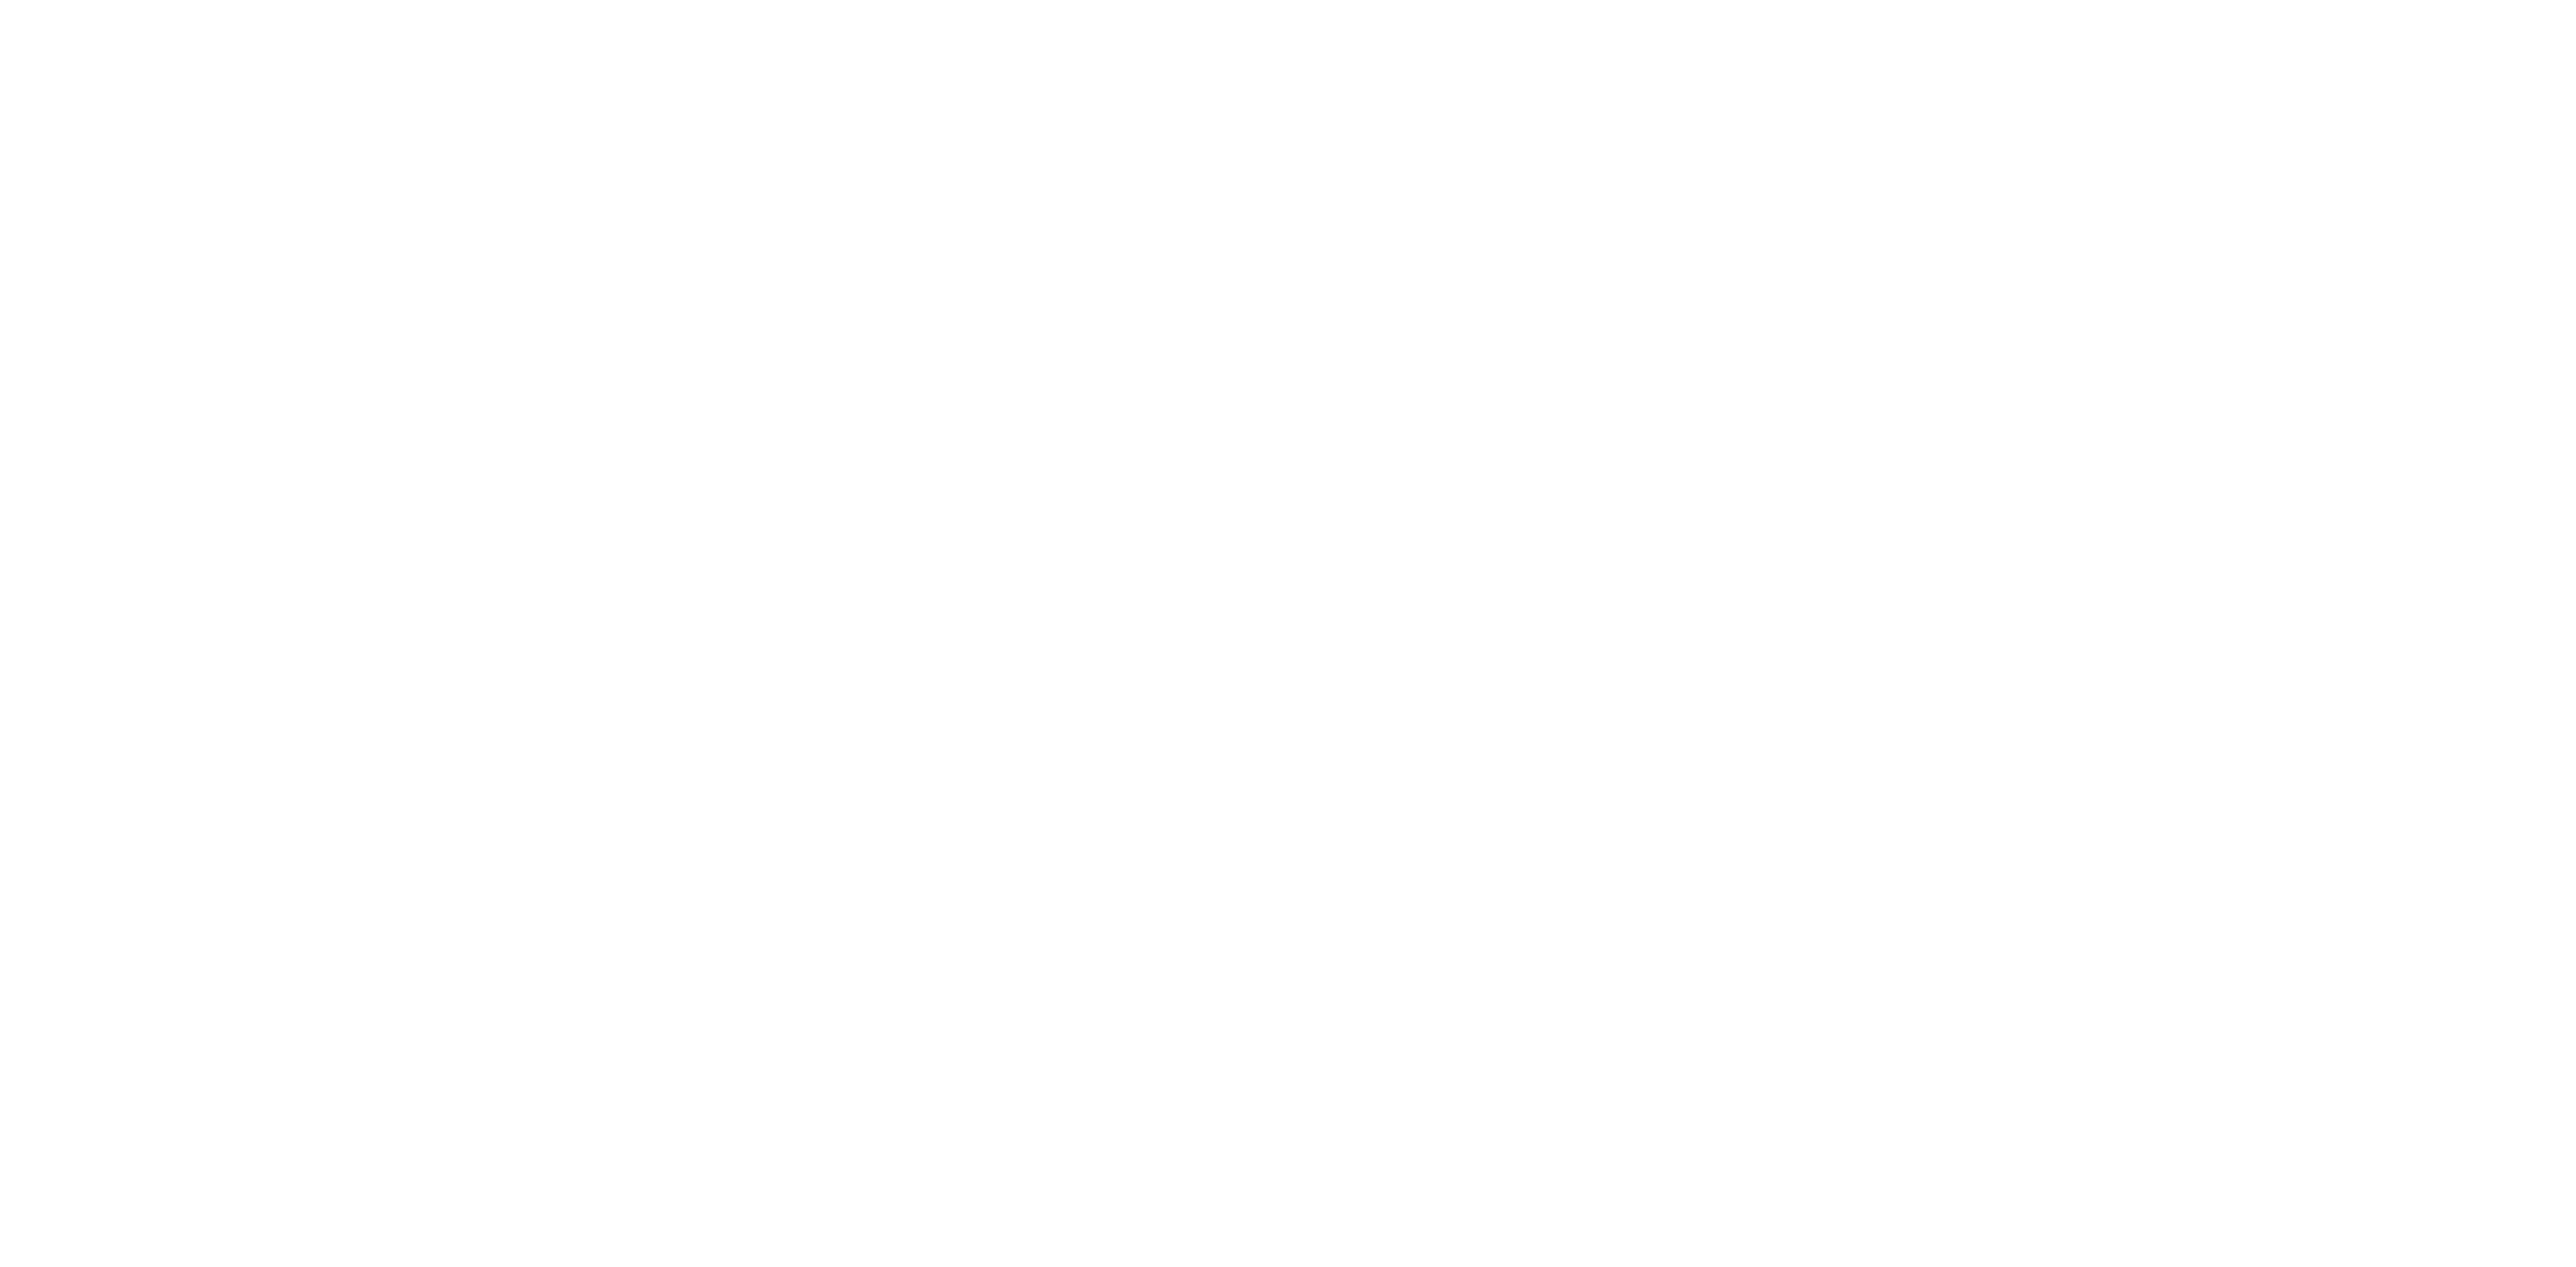 UFC-Fight-Pass-logo